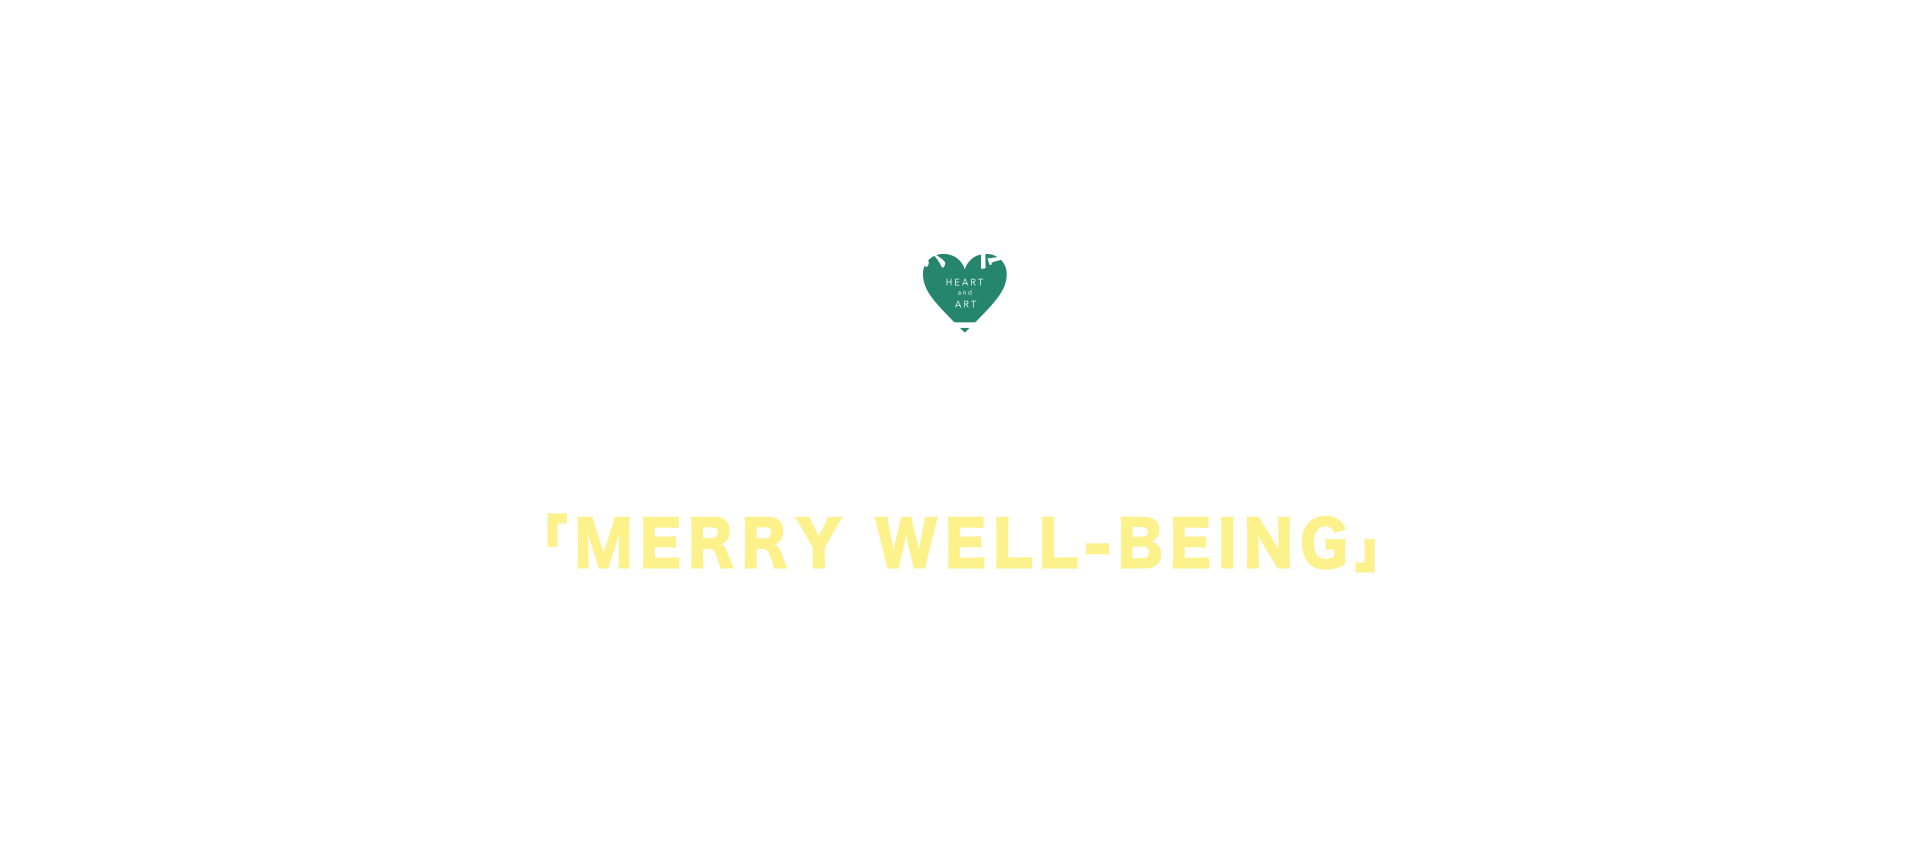 東京で行われるクリスマスイベント